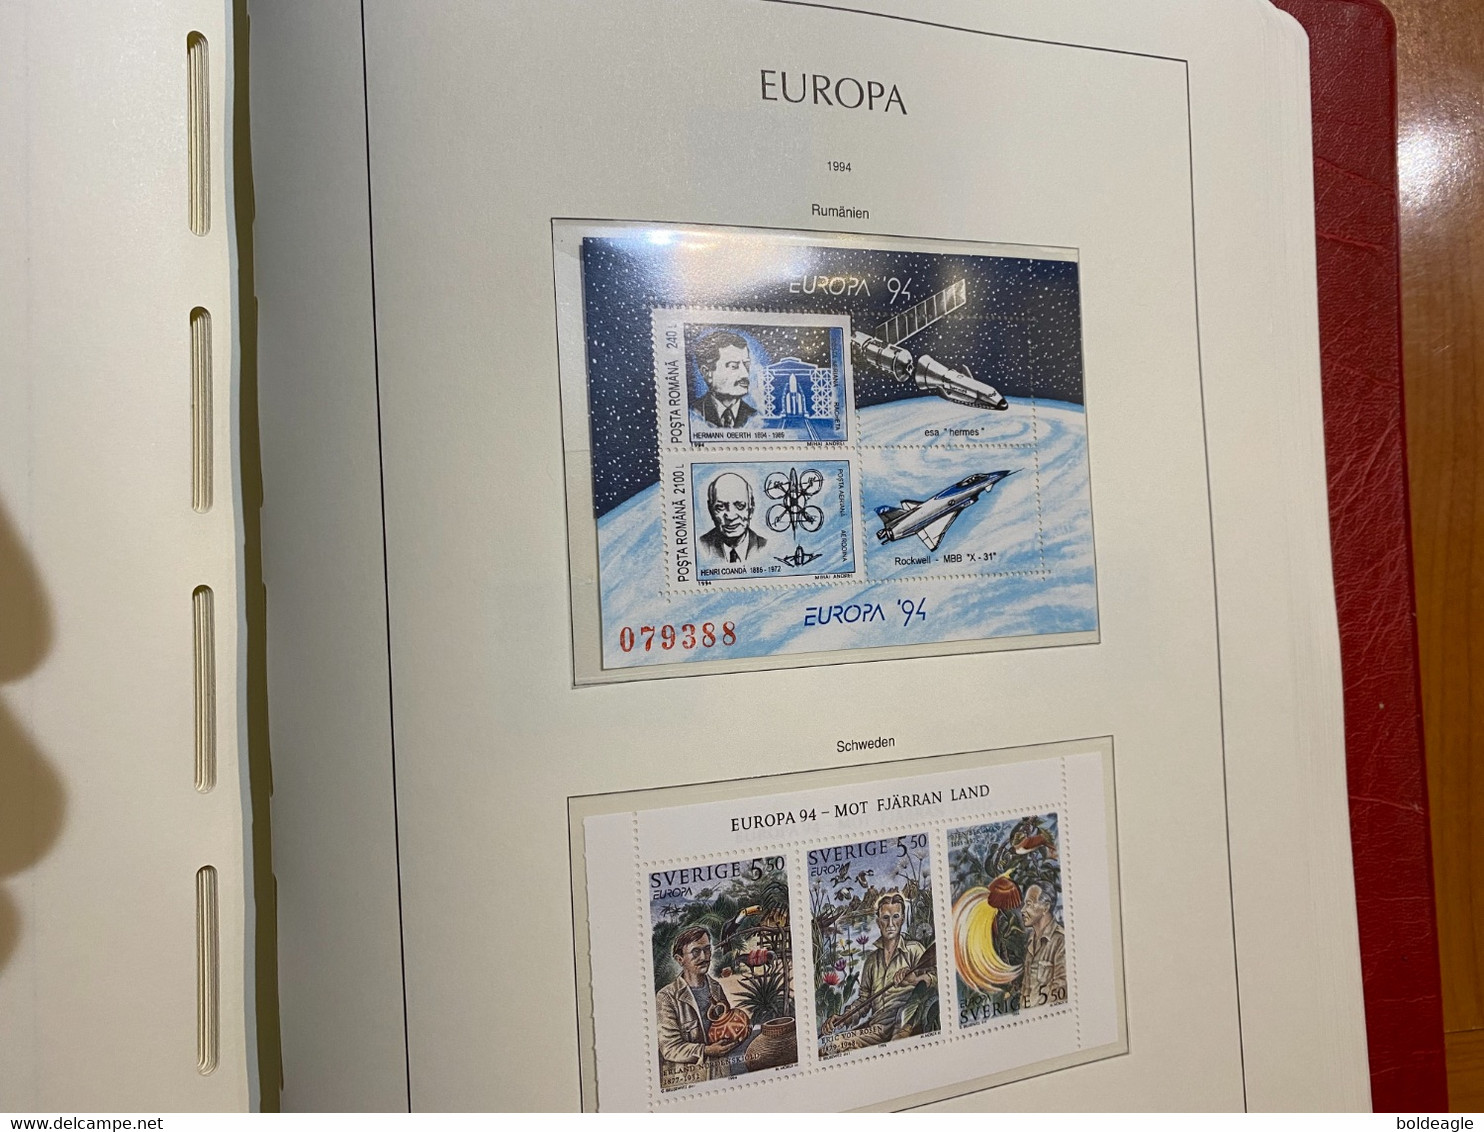 Europa année complète 1994 avec blocs - neuf sans charnière Luxe